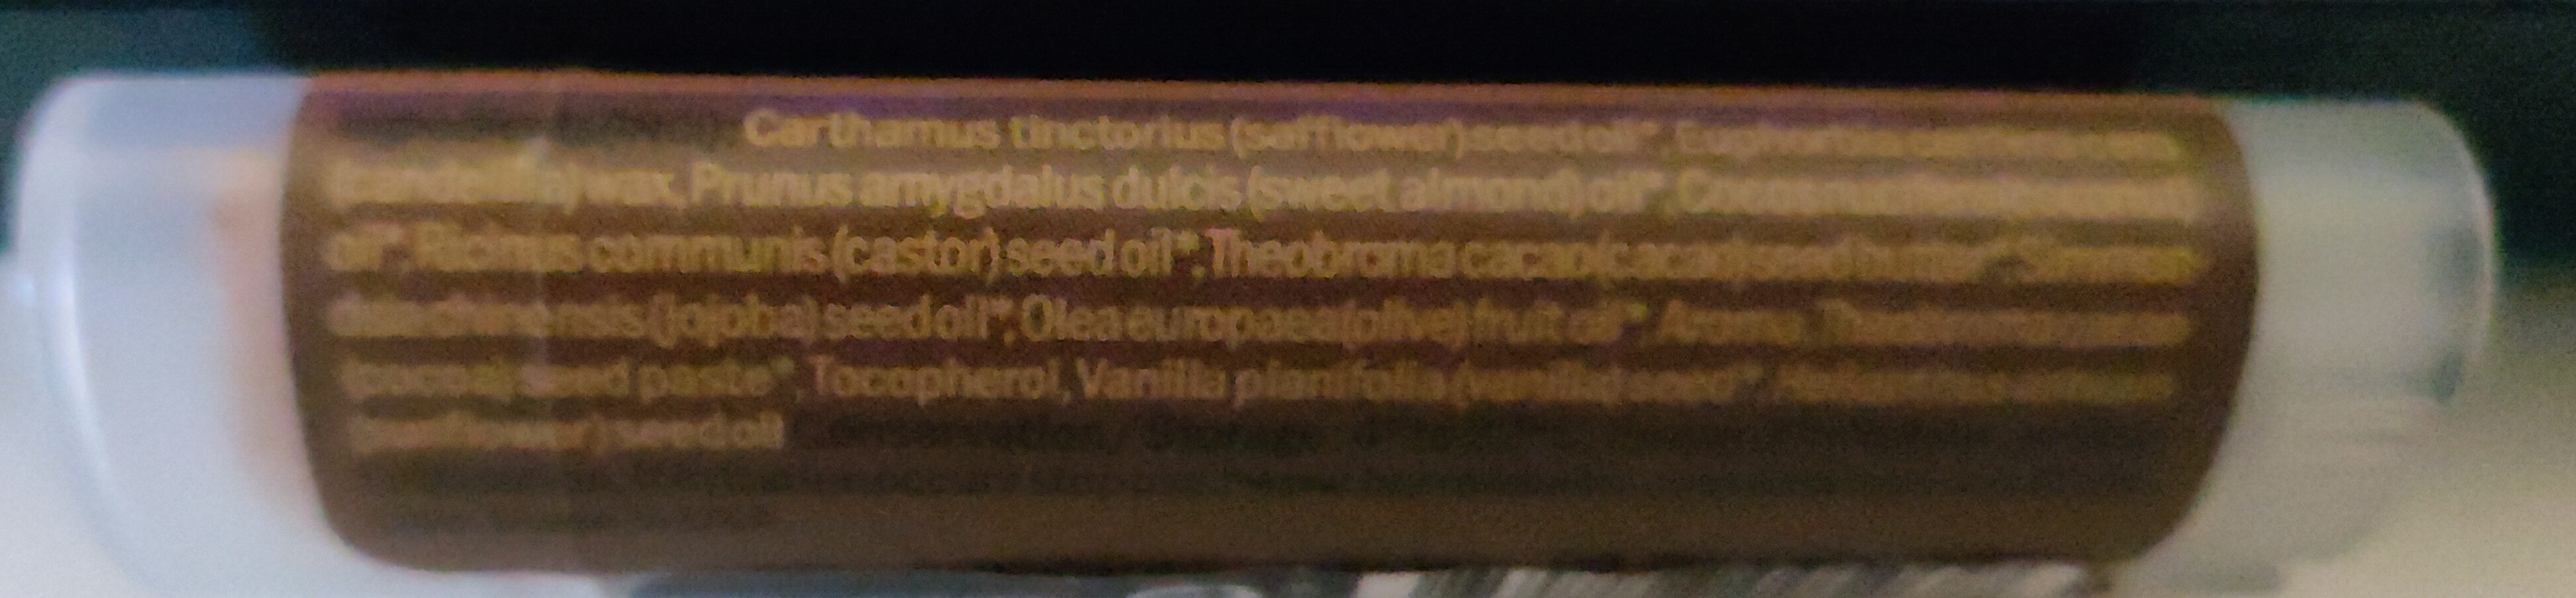 Baume à lèvres chocolat - Ingredients - fr